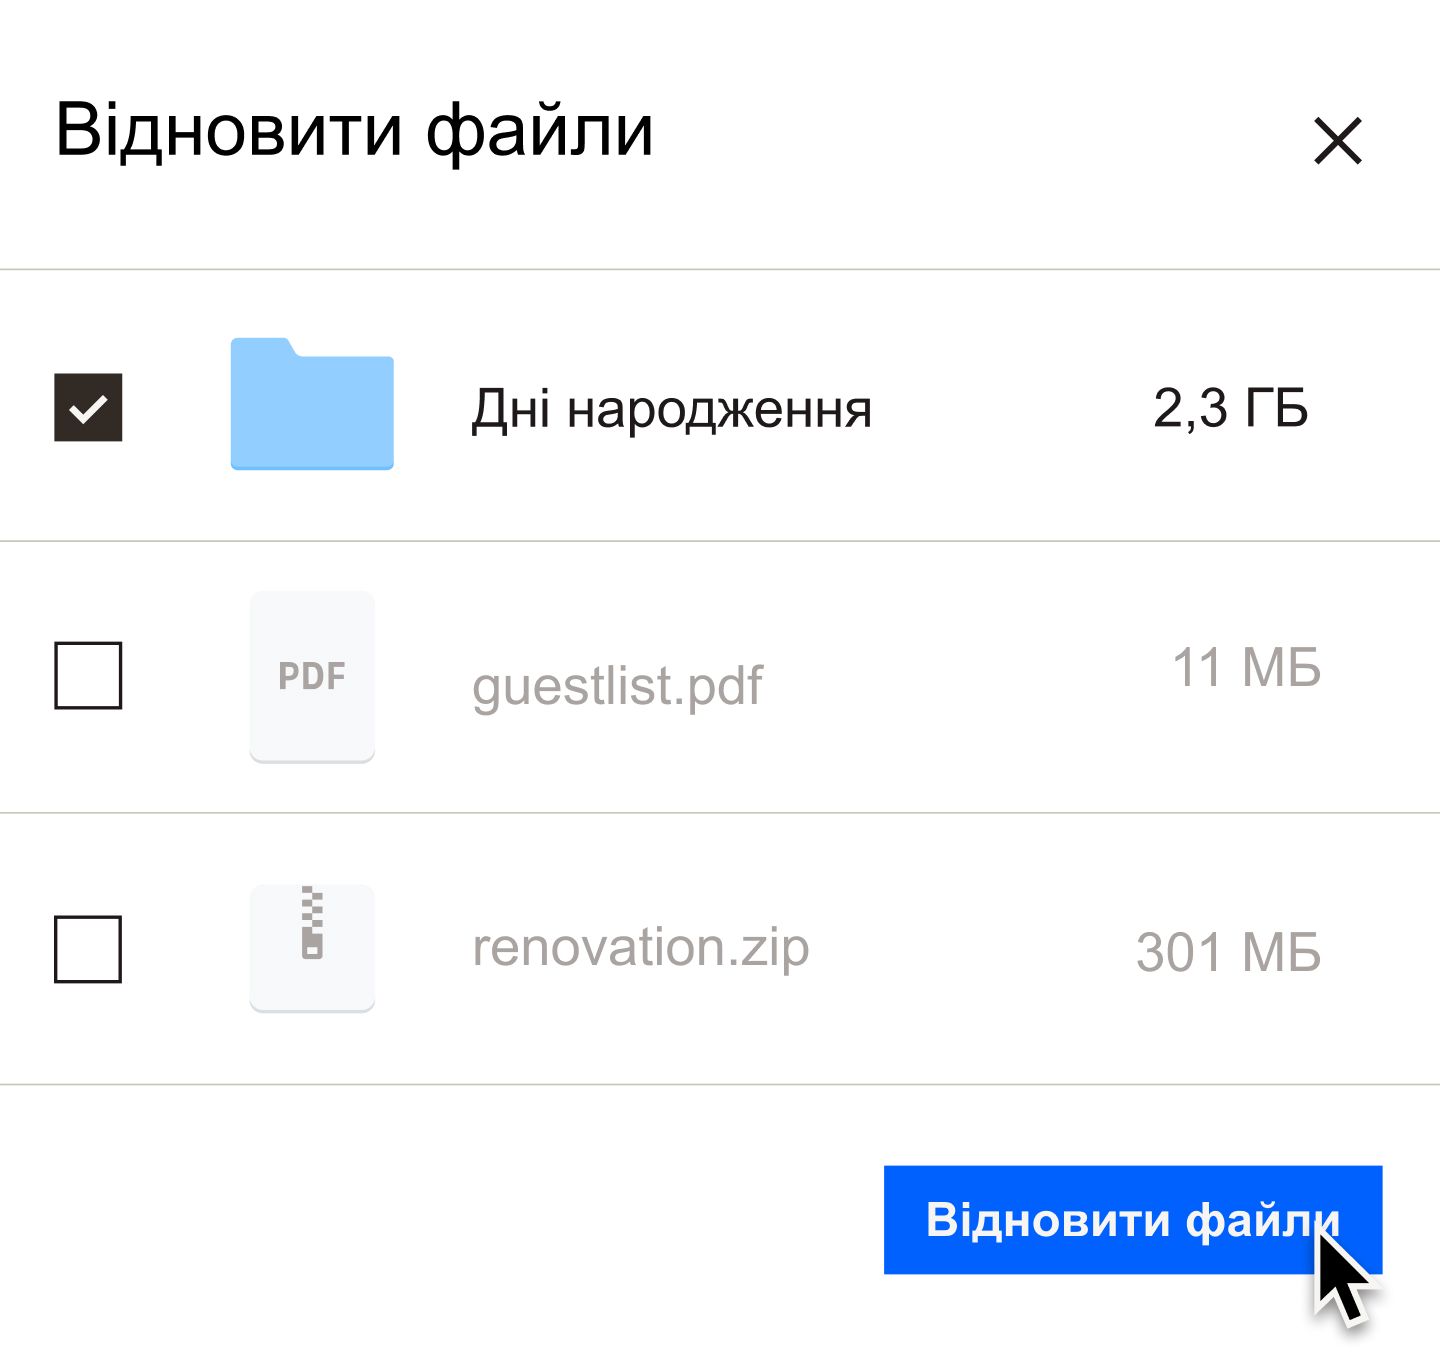 Користувач натискає синю кнопку «Відновити файли»